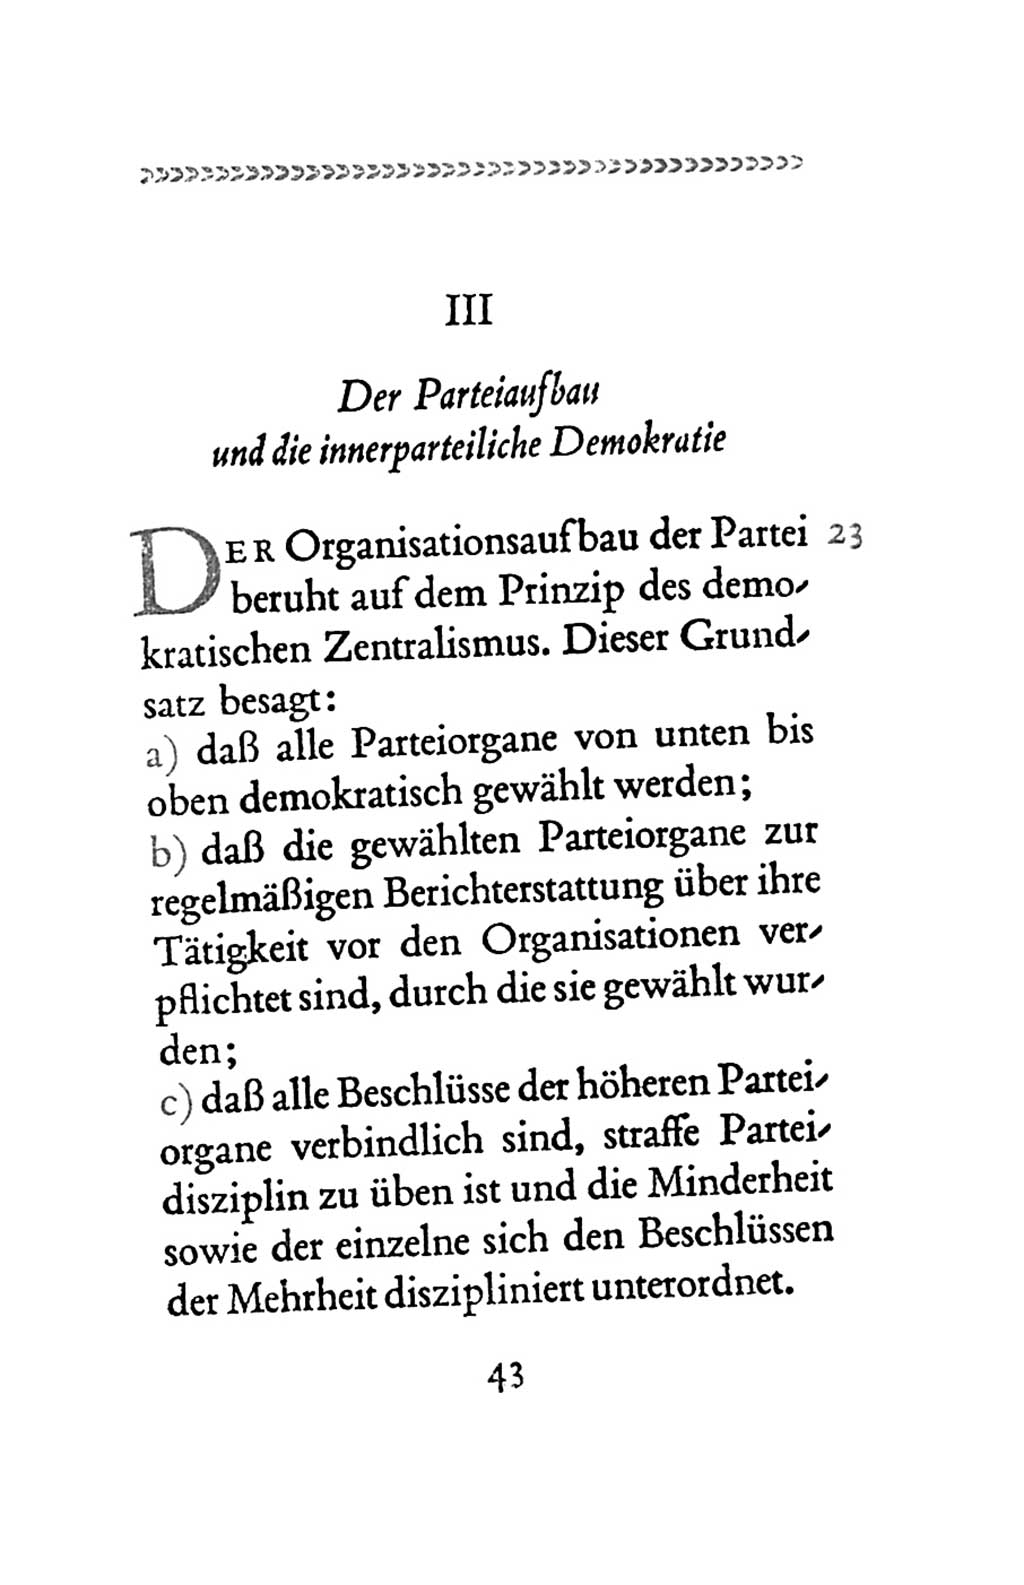 Statut der Sozialistischen Einheitspartei Deutschlands (SED) 1963, Seite 43 (St. SED DDR 1963, S. 43)